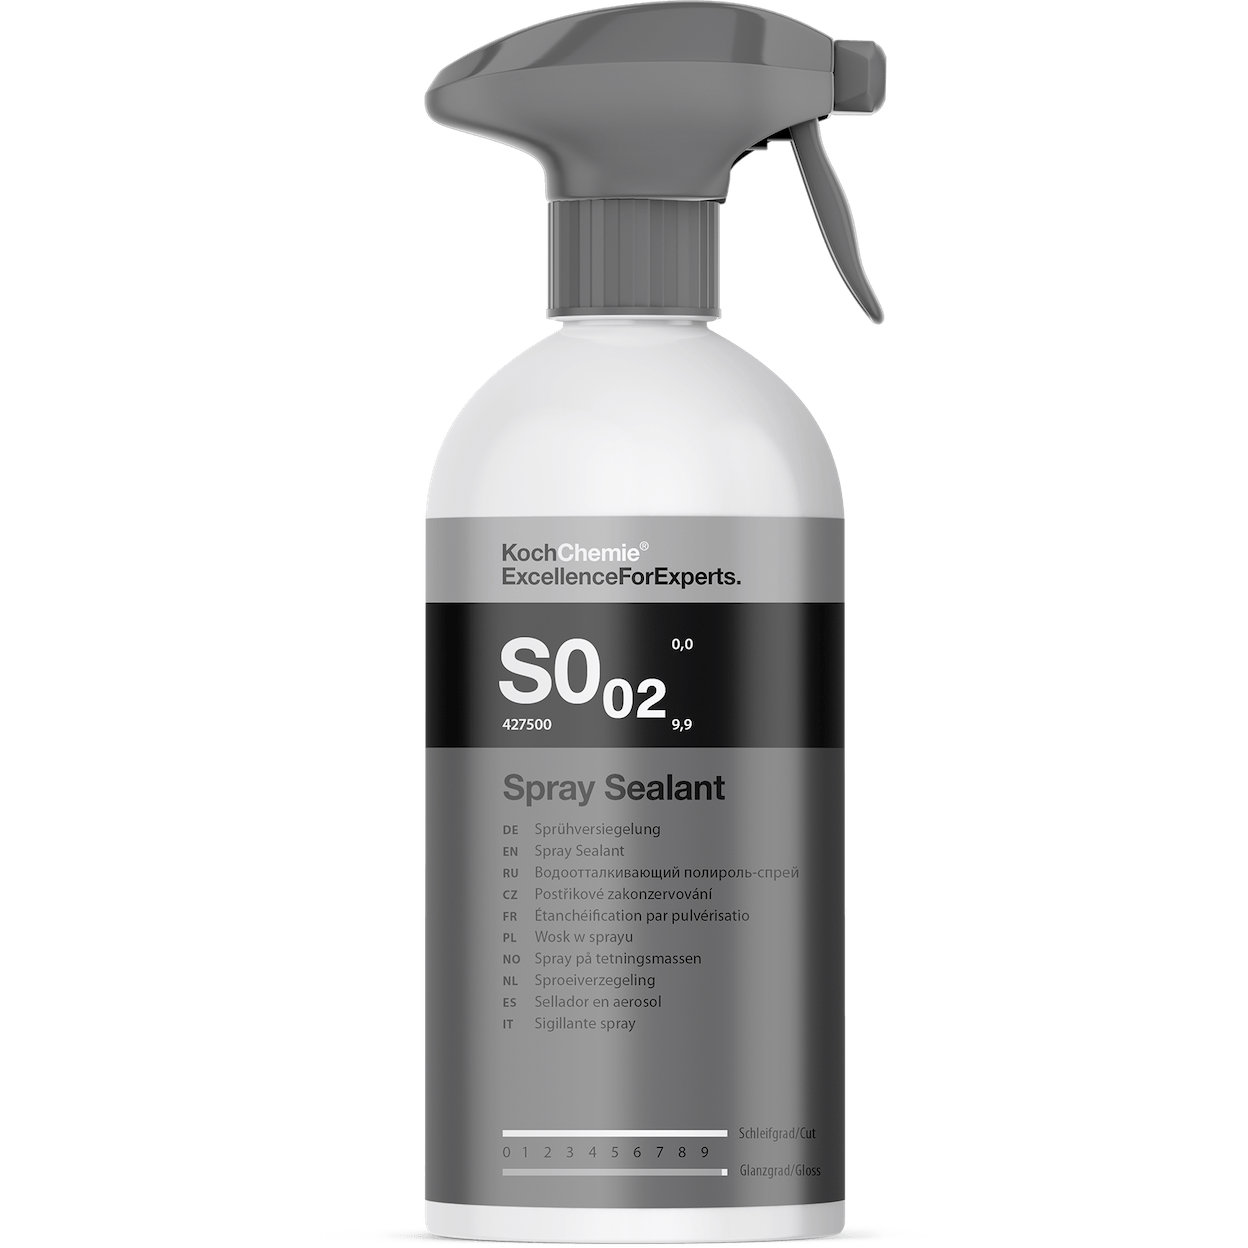 Spray Sealant S0,02 - Sprühversiegelung 500ml